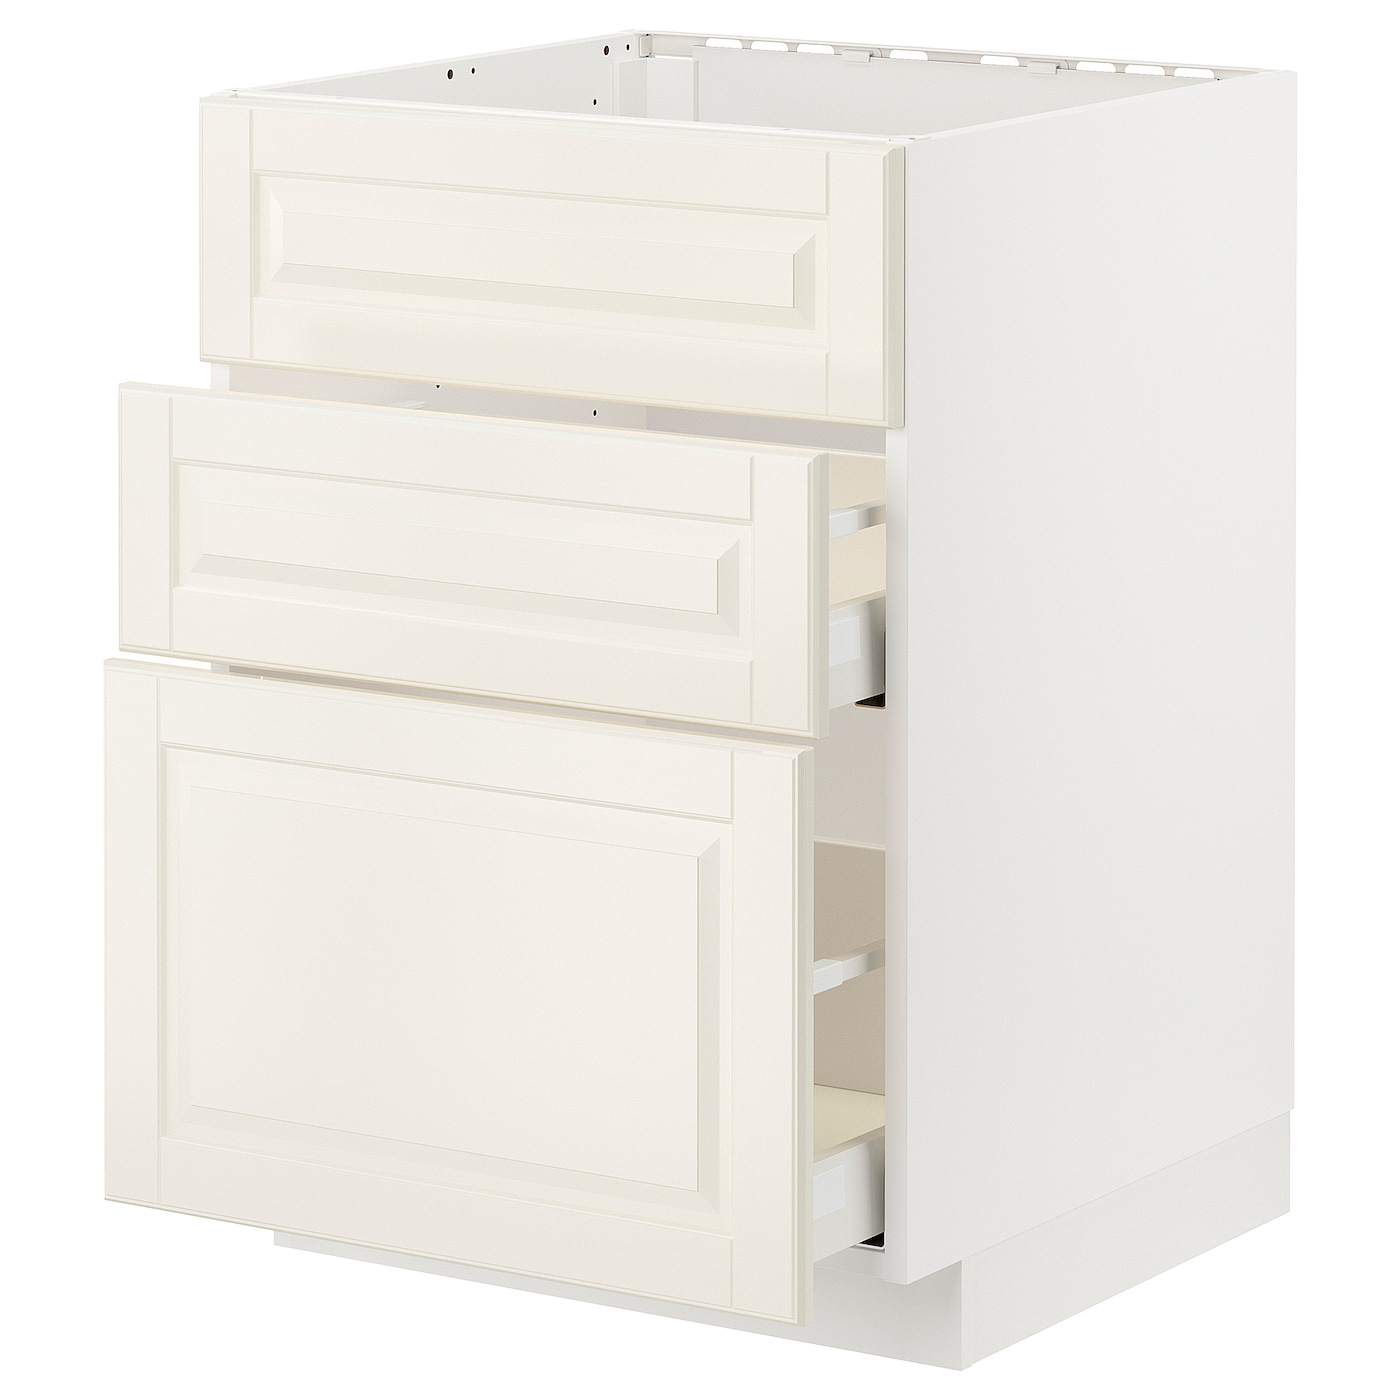 Напольный шкаф - METOD / MAXIMERA IKEA/ МЕТОД/ МАКСИМЕРА ИКЕА,  80х60 см, белый/светло-бежевый